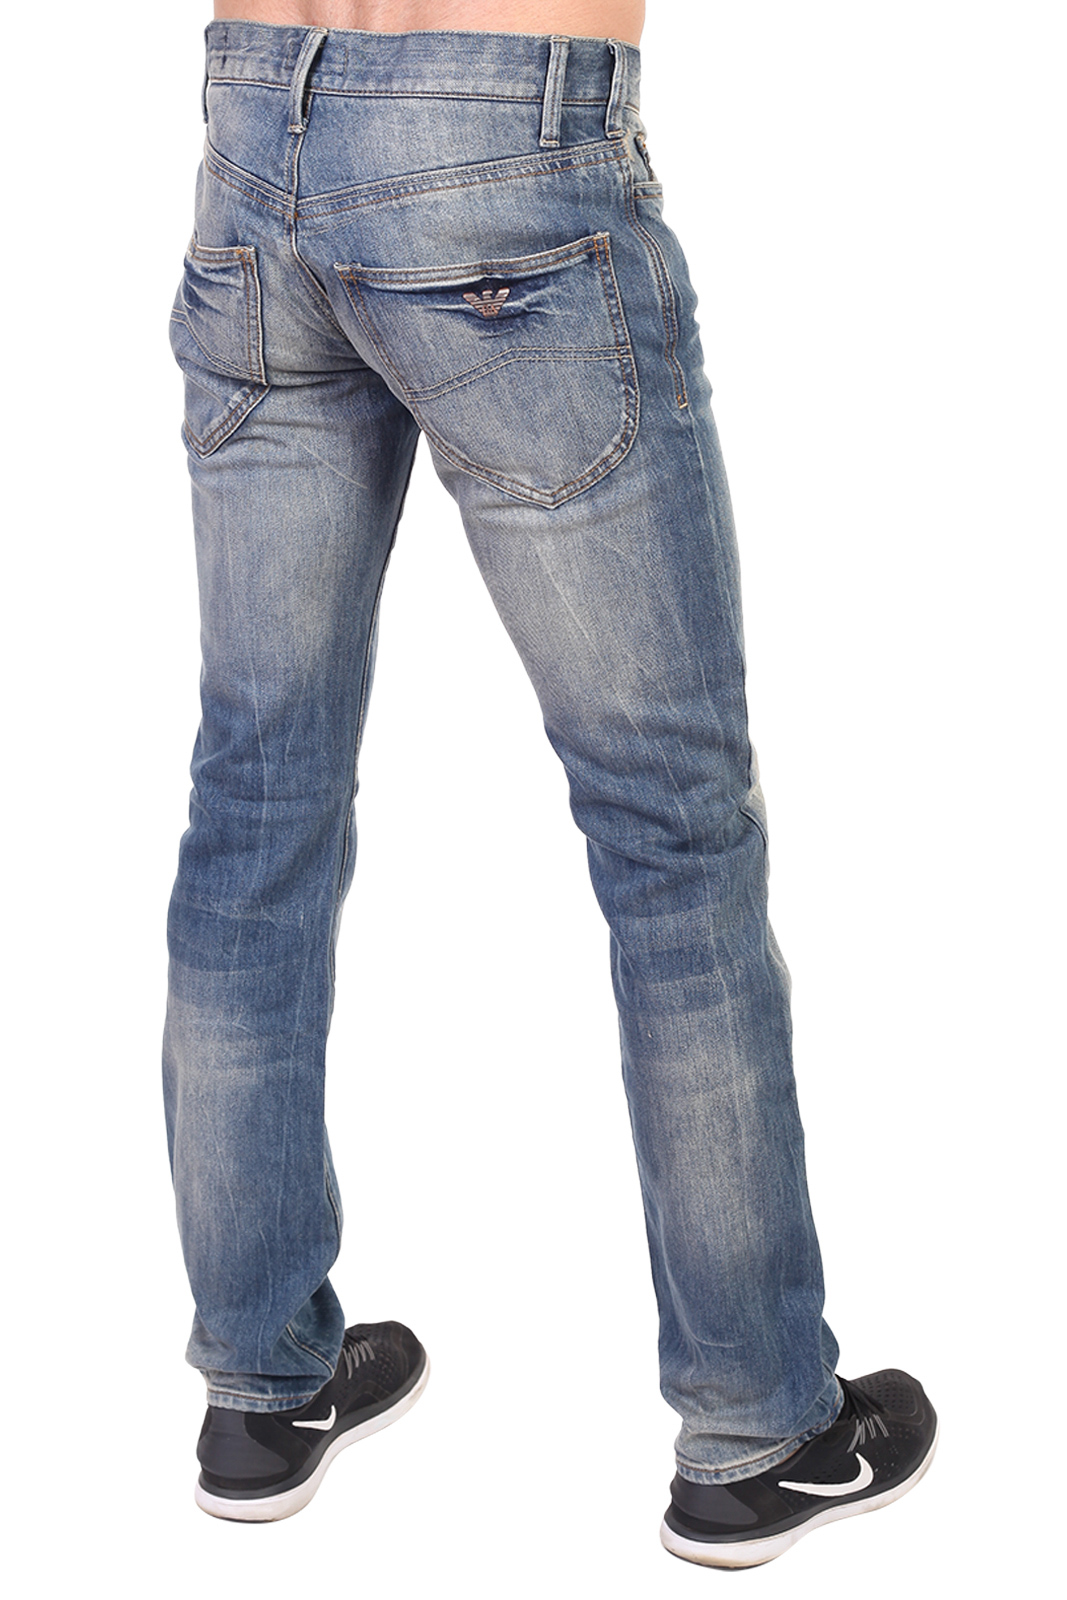 Купить в интернете недорогие мужские джинсы